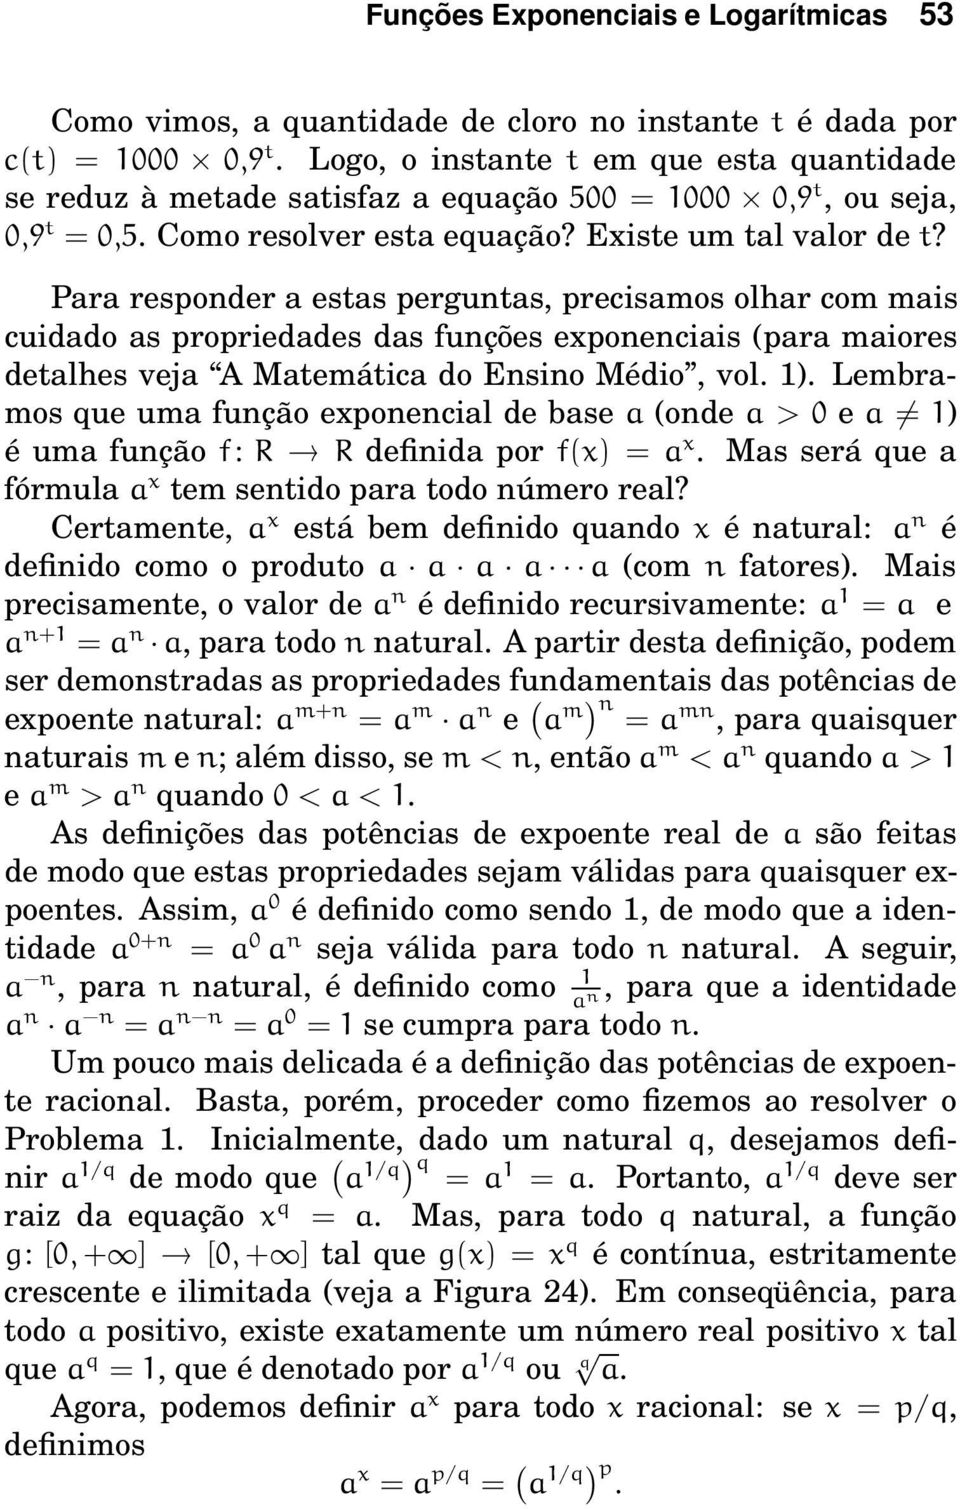 Para responder a estas perguntas, precisamos olhar com mais cuidado as propriedades das funções exponenciais (para maiores detalhes veja A Matemática do Ensino Médio, vol. 1).